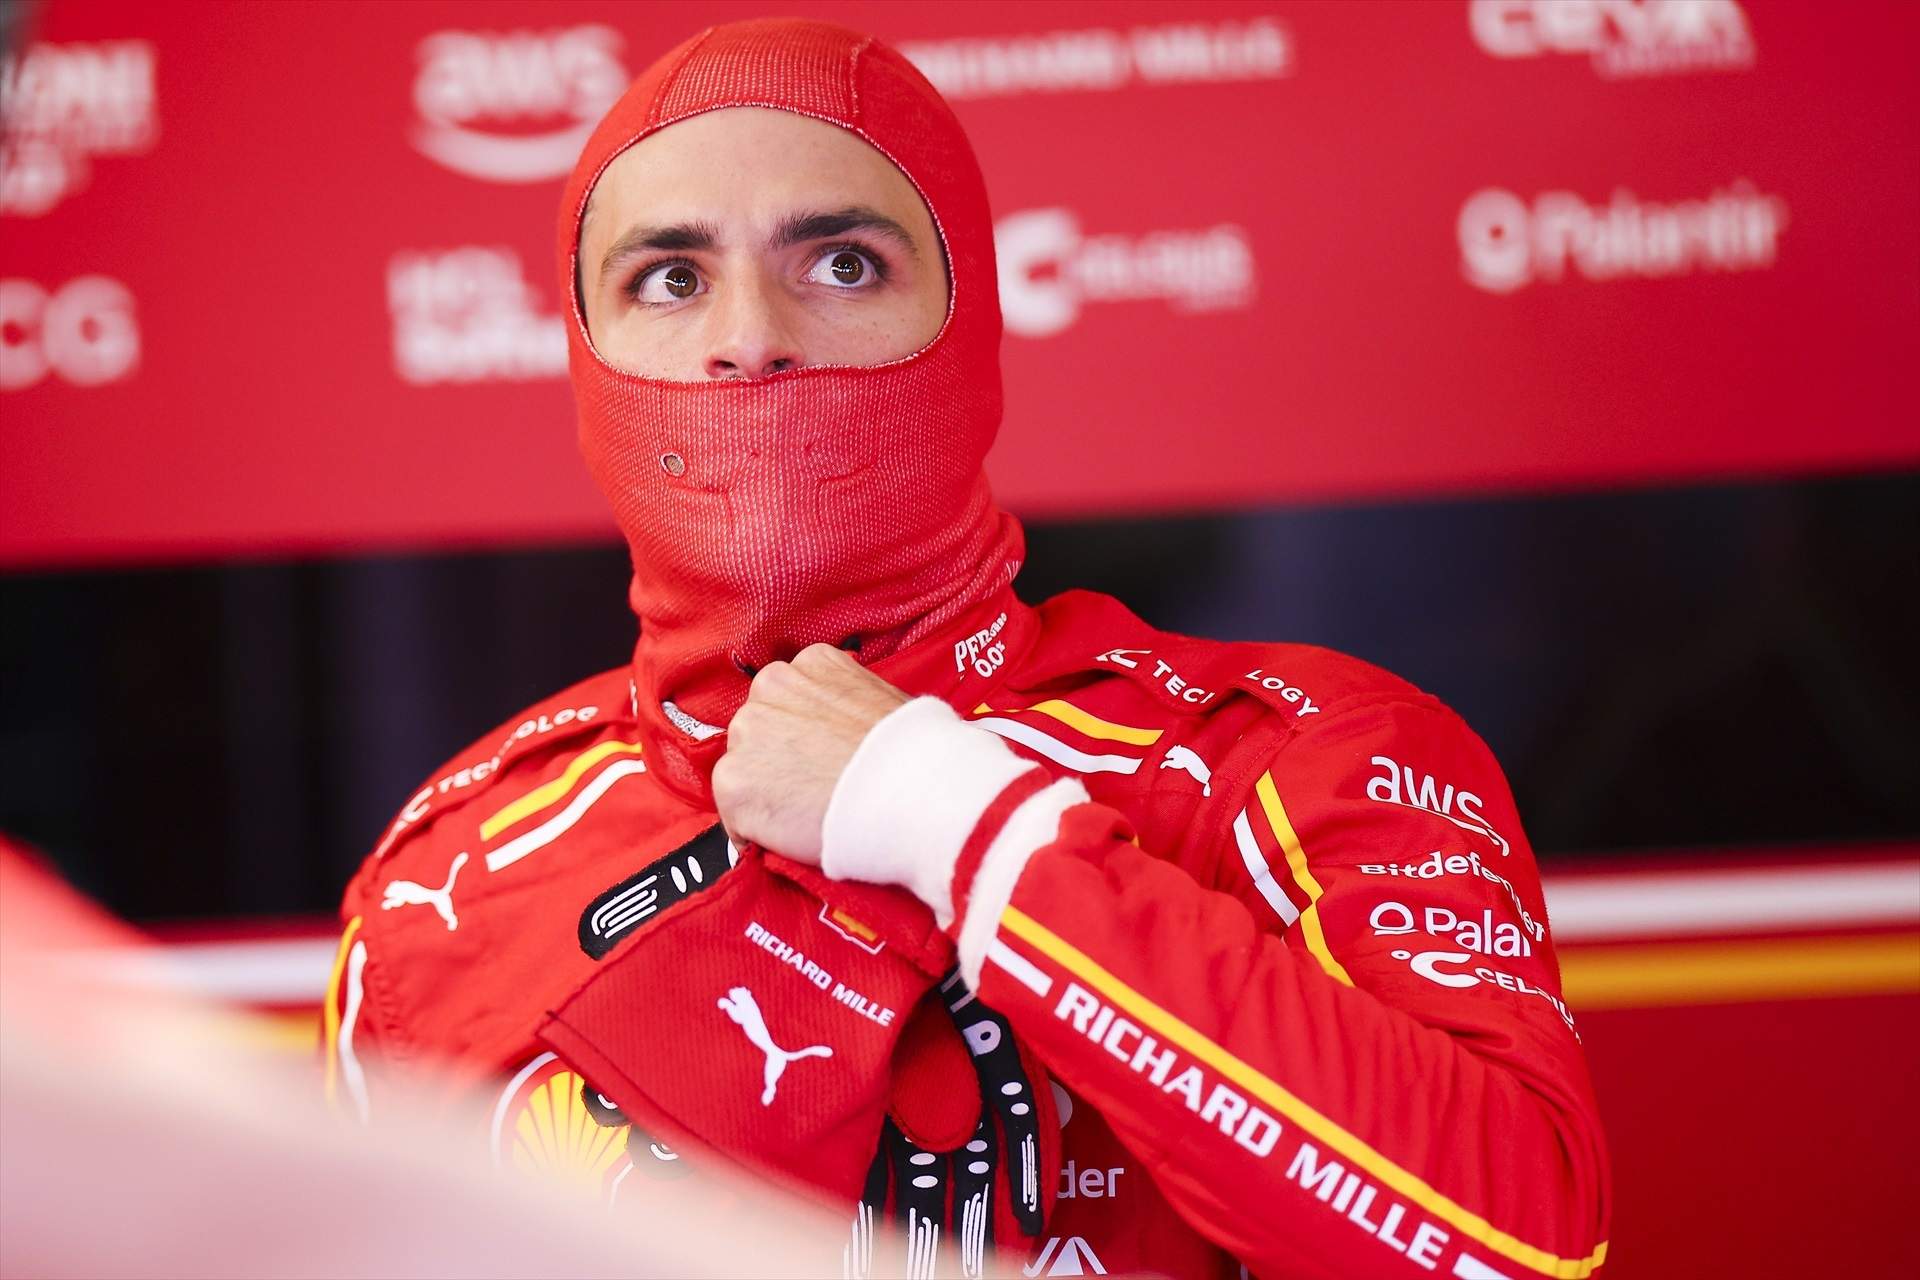 Confirmado, Carlos Sainz firma con su nuevo equipo en la F1 y la sorpresa es mayúscula